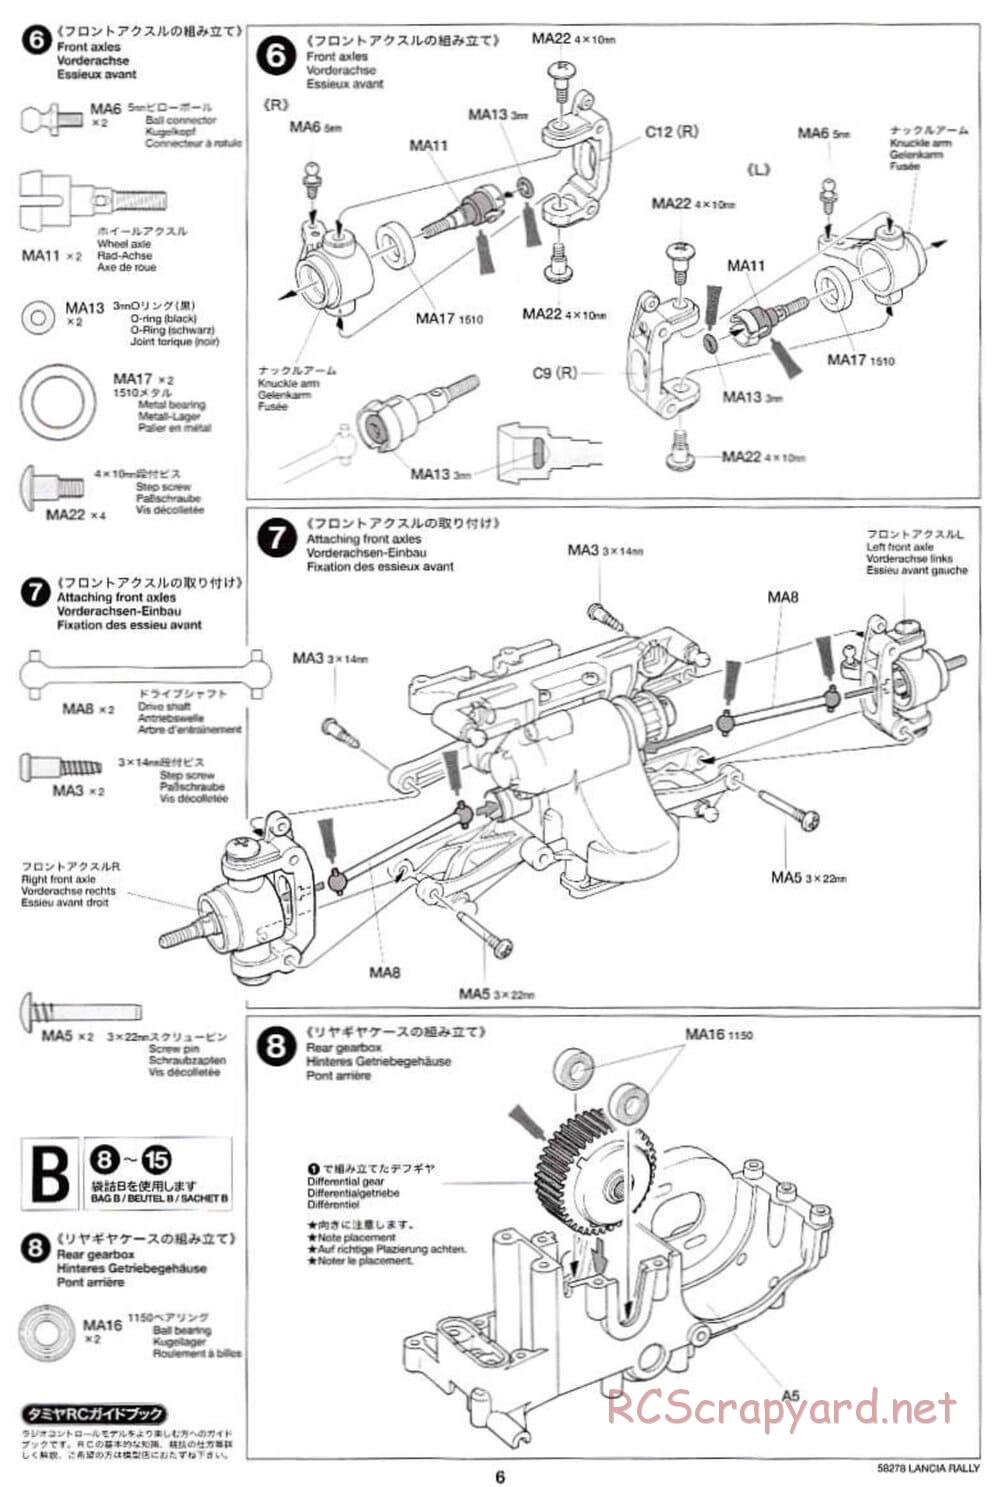 Tamiya - Lancia 037 Rally - TA-03RS Chassis - Manual - Page 6